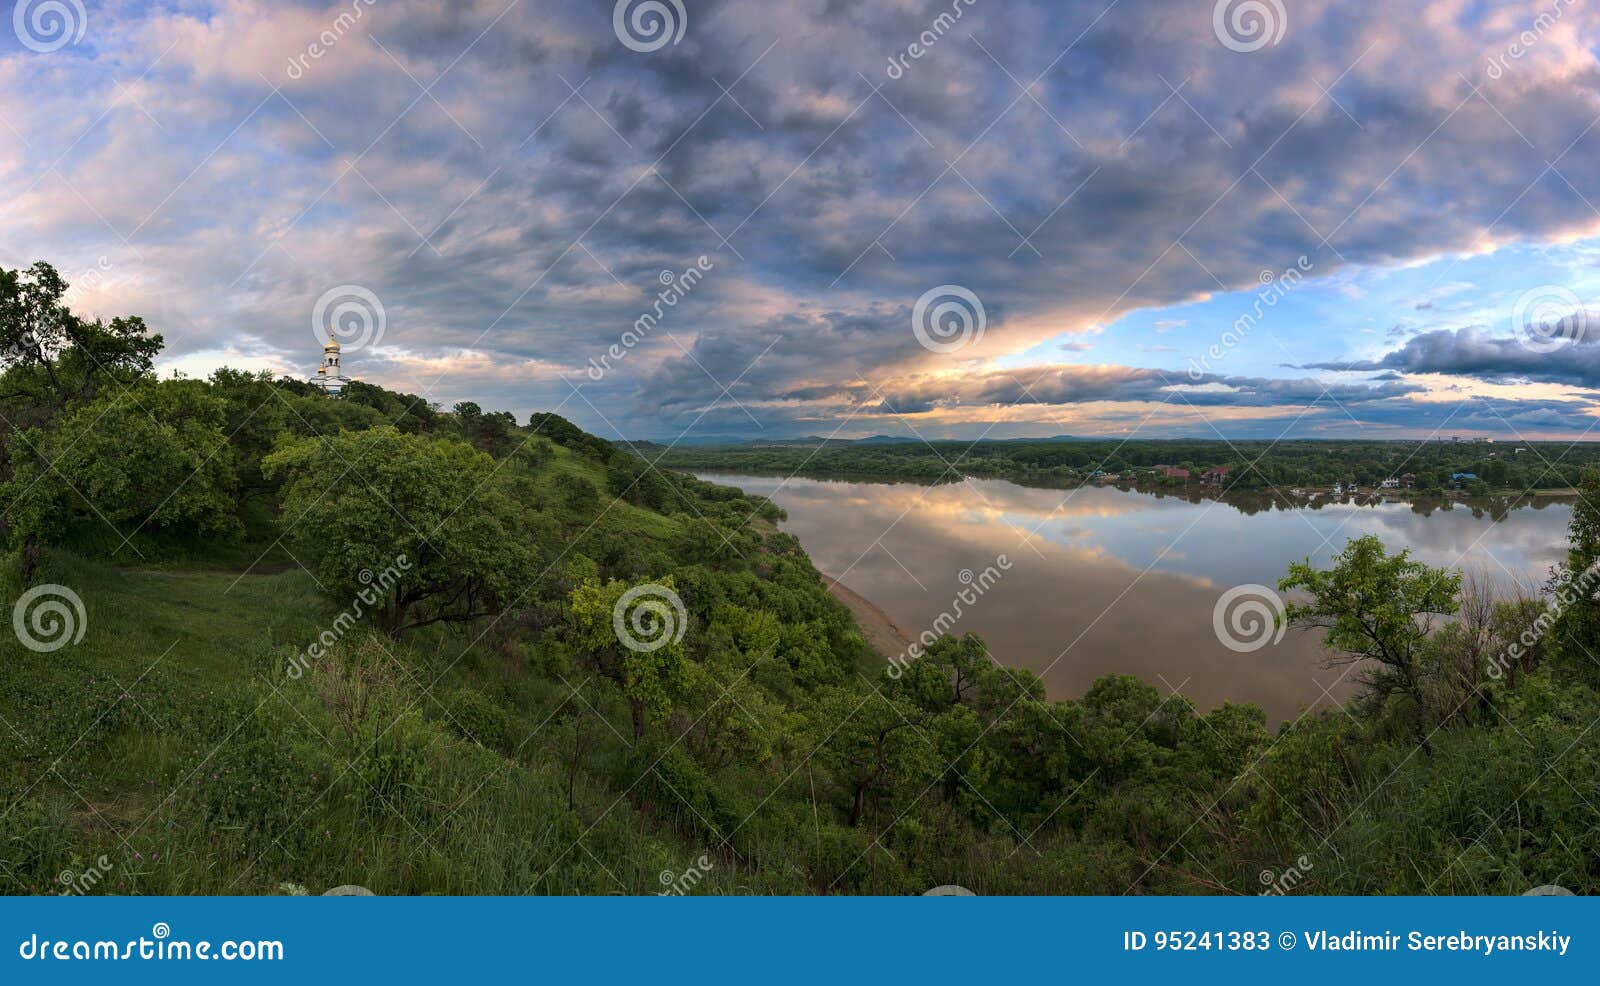 Над широкой речкою. Река Уссури Приморский край. Река Уссури Лесозаводск. Над широкой рекой. Река Ипуть фото.